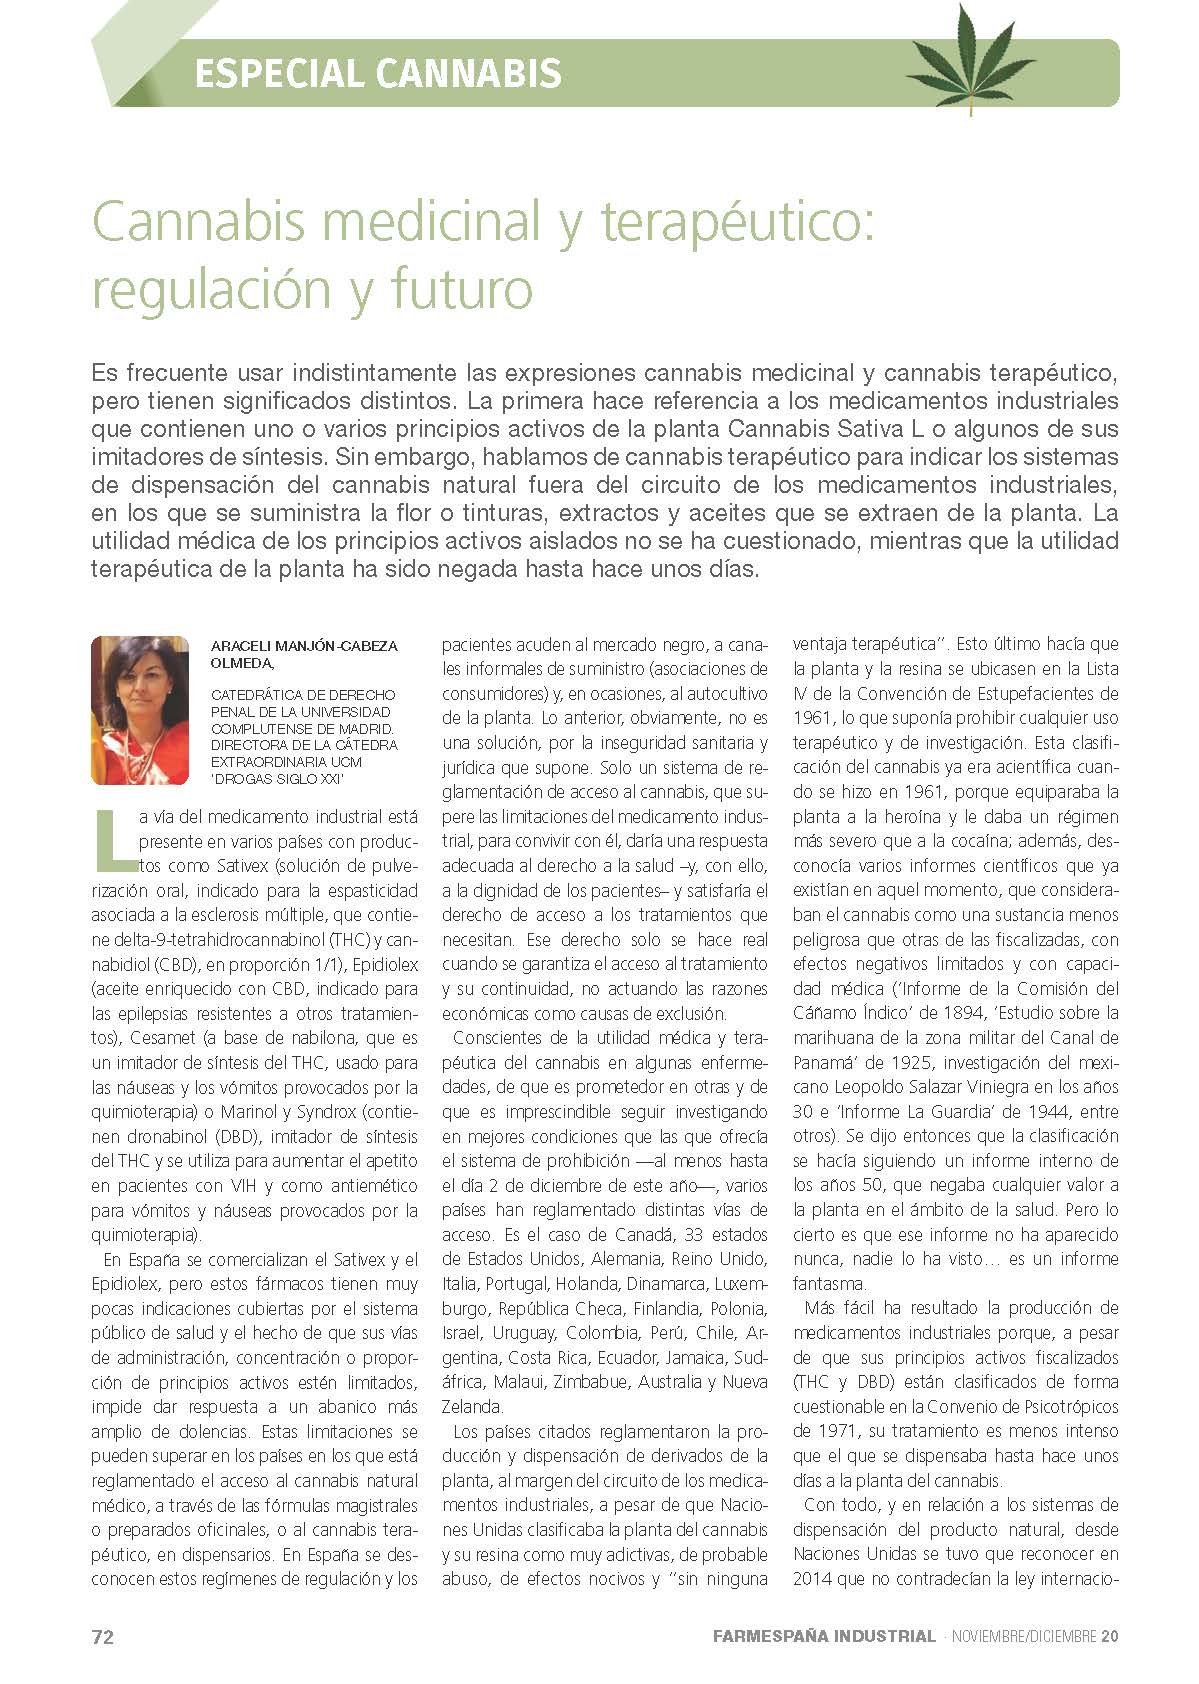 "Cannabis medicinal y terapéutico: regulación y futuro" por Araceli Manjón-Cabeza